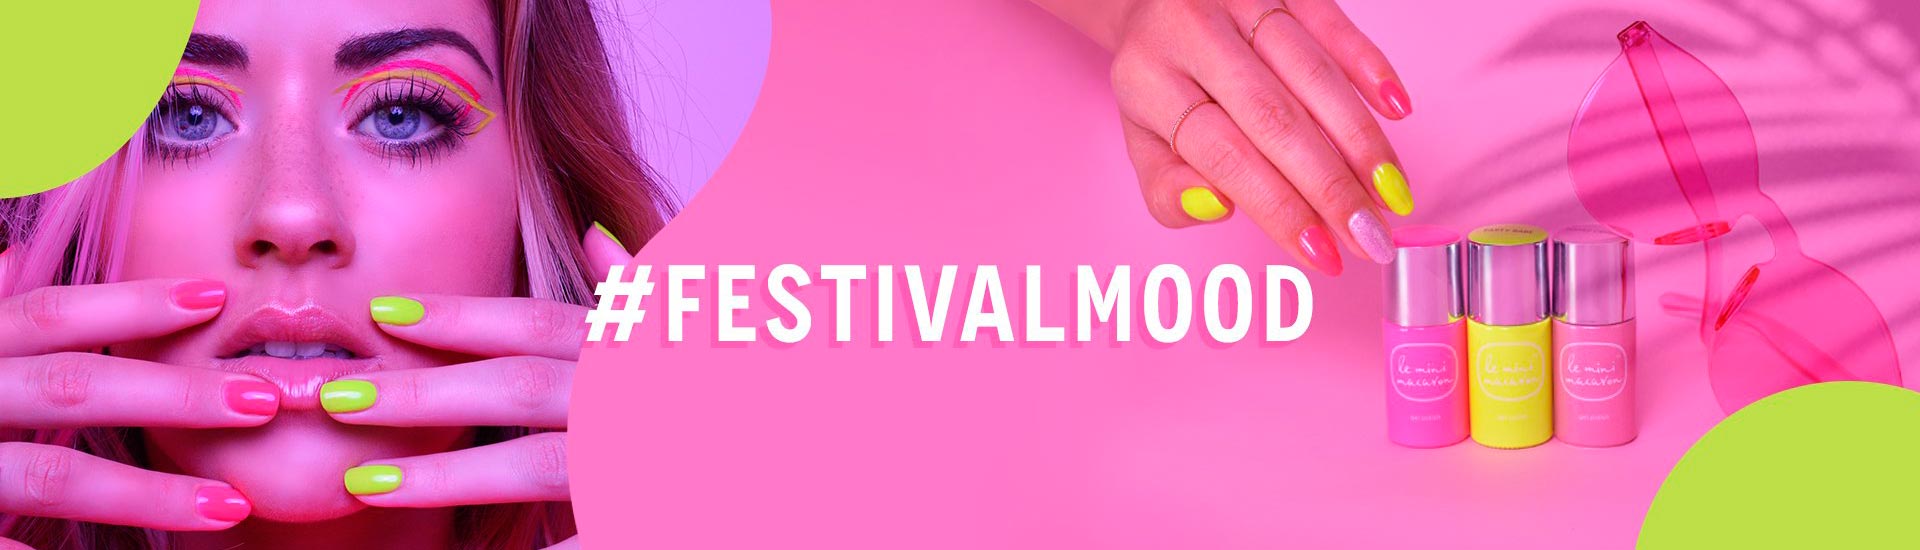 Le Mini Macaron festival-mood-collection